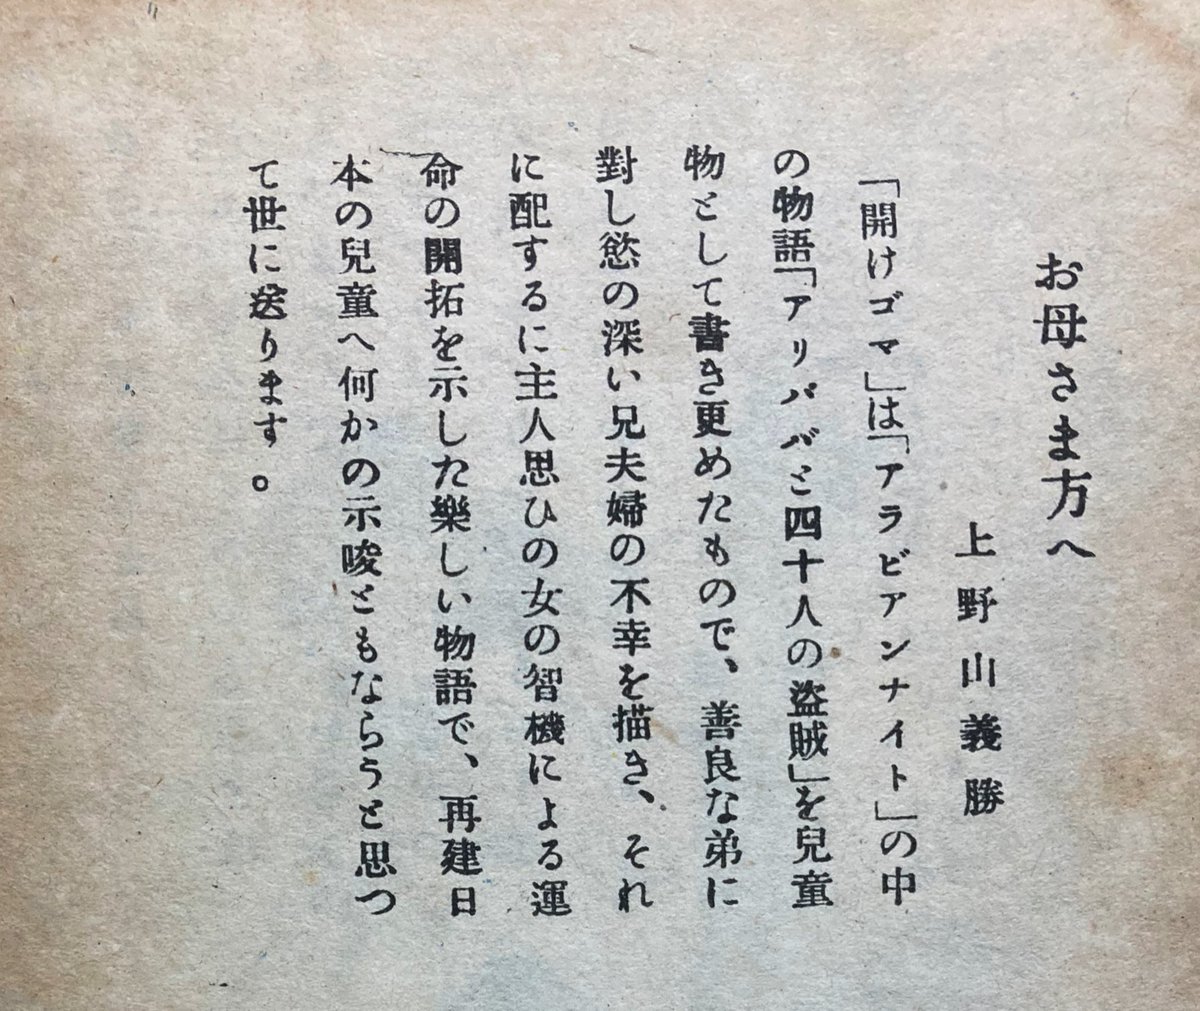 昭和22年刊の童話冊子見つけた。ちゃんと油で殺してていいね!「再建日本の児童へ〜」が泣かせる。 